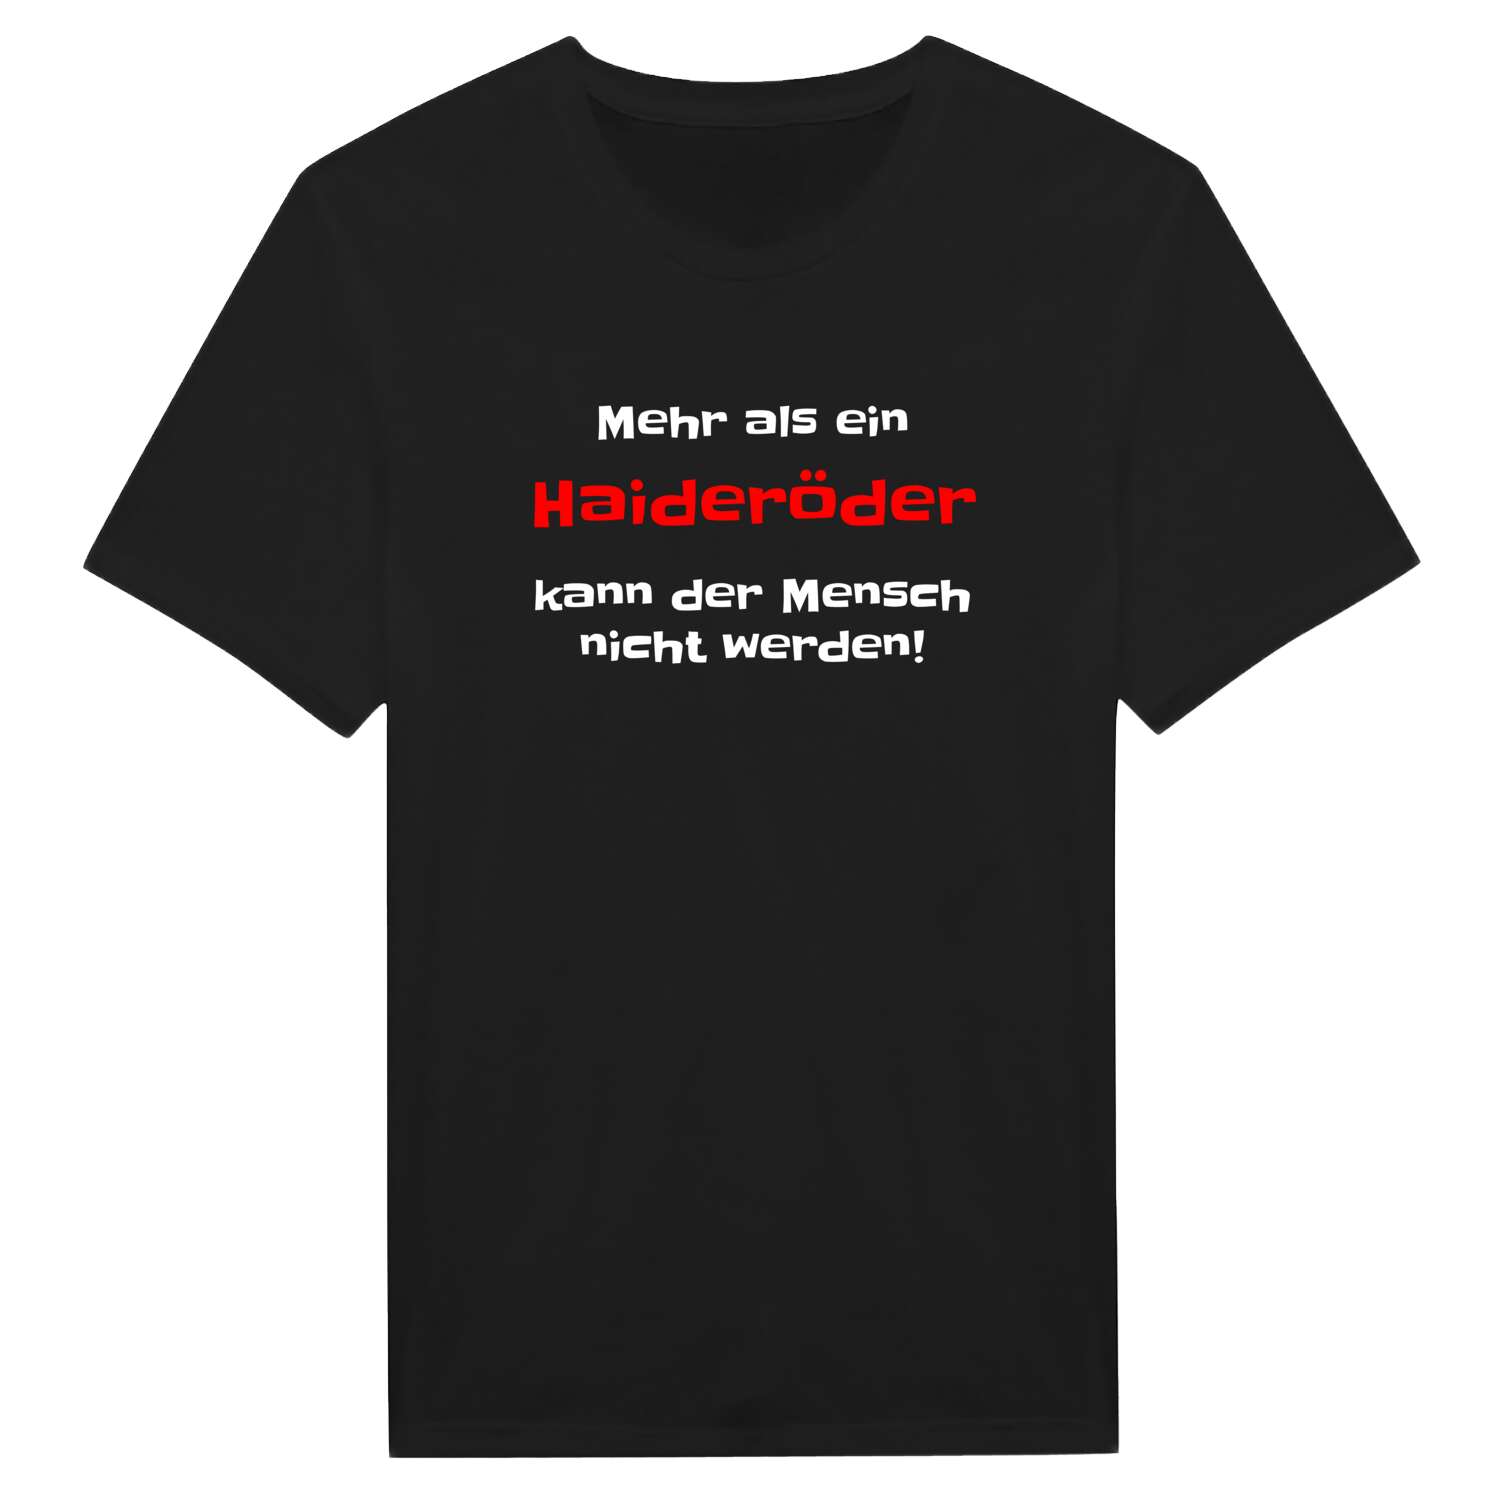 Haideröd T-Shirt »Mehr als ein«